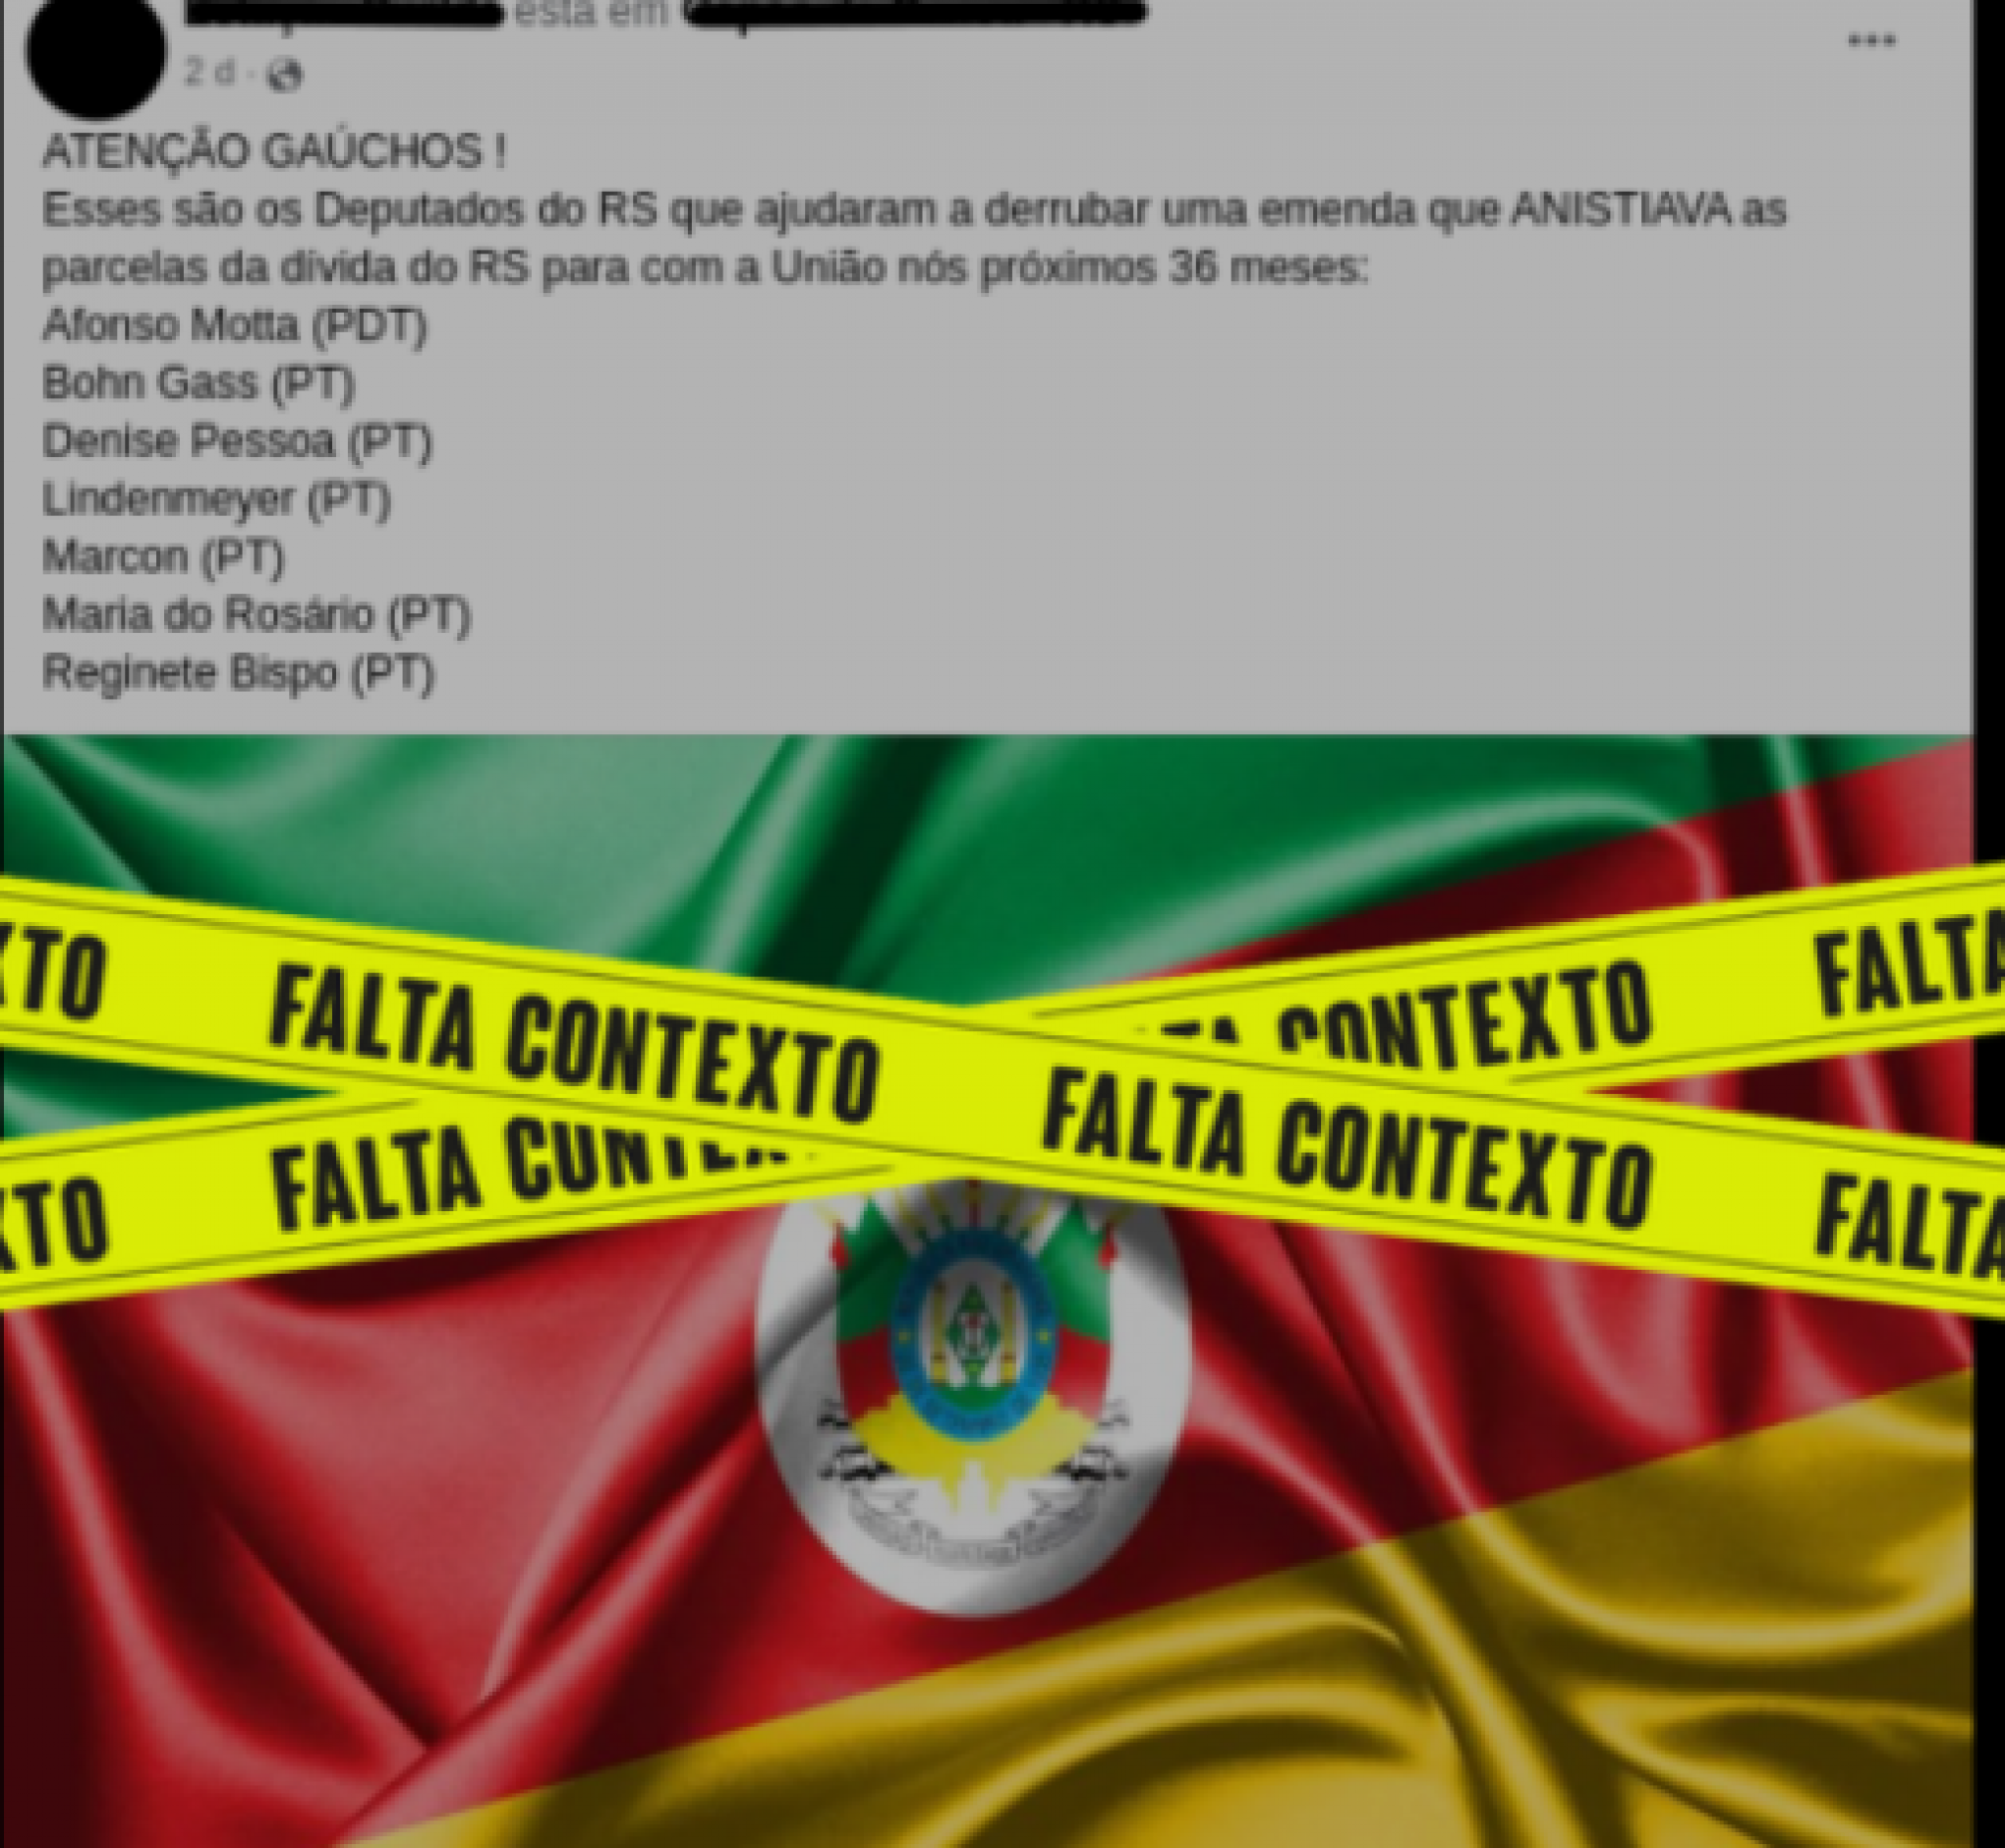 AGÊNCIA LUPA: Falta contexto ao post sobre deputados gaúchos que votaram contra anistia da dívida do Estado